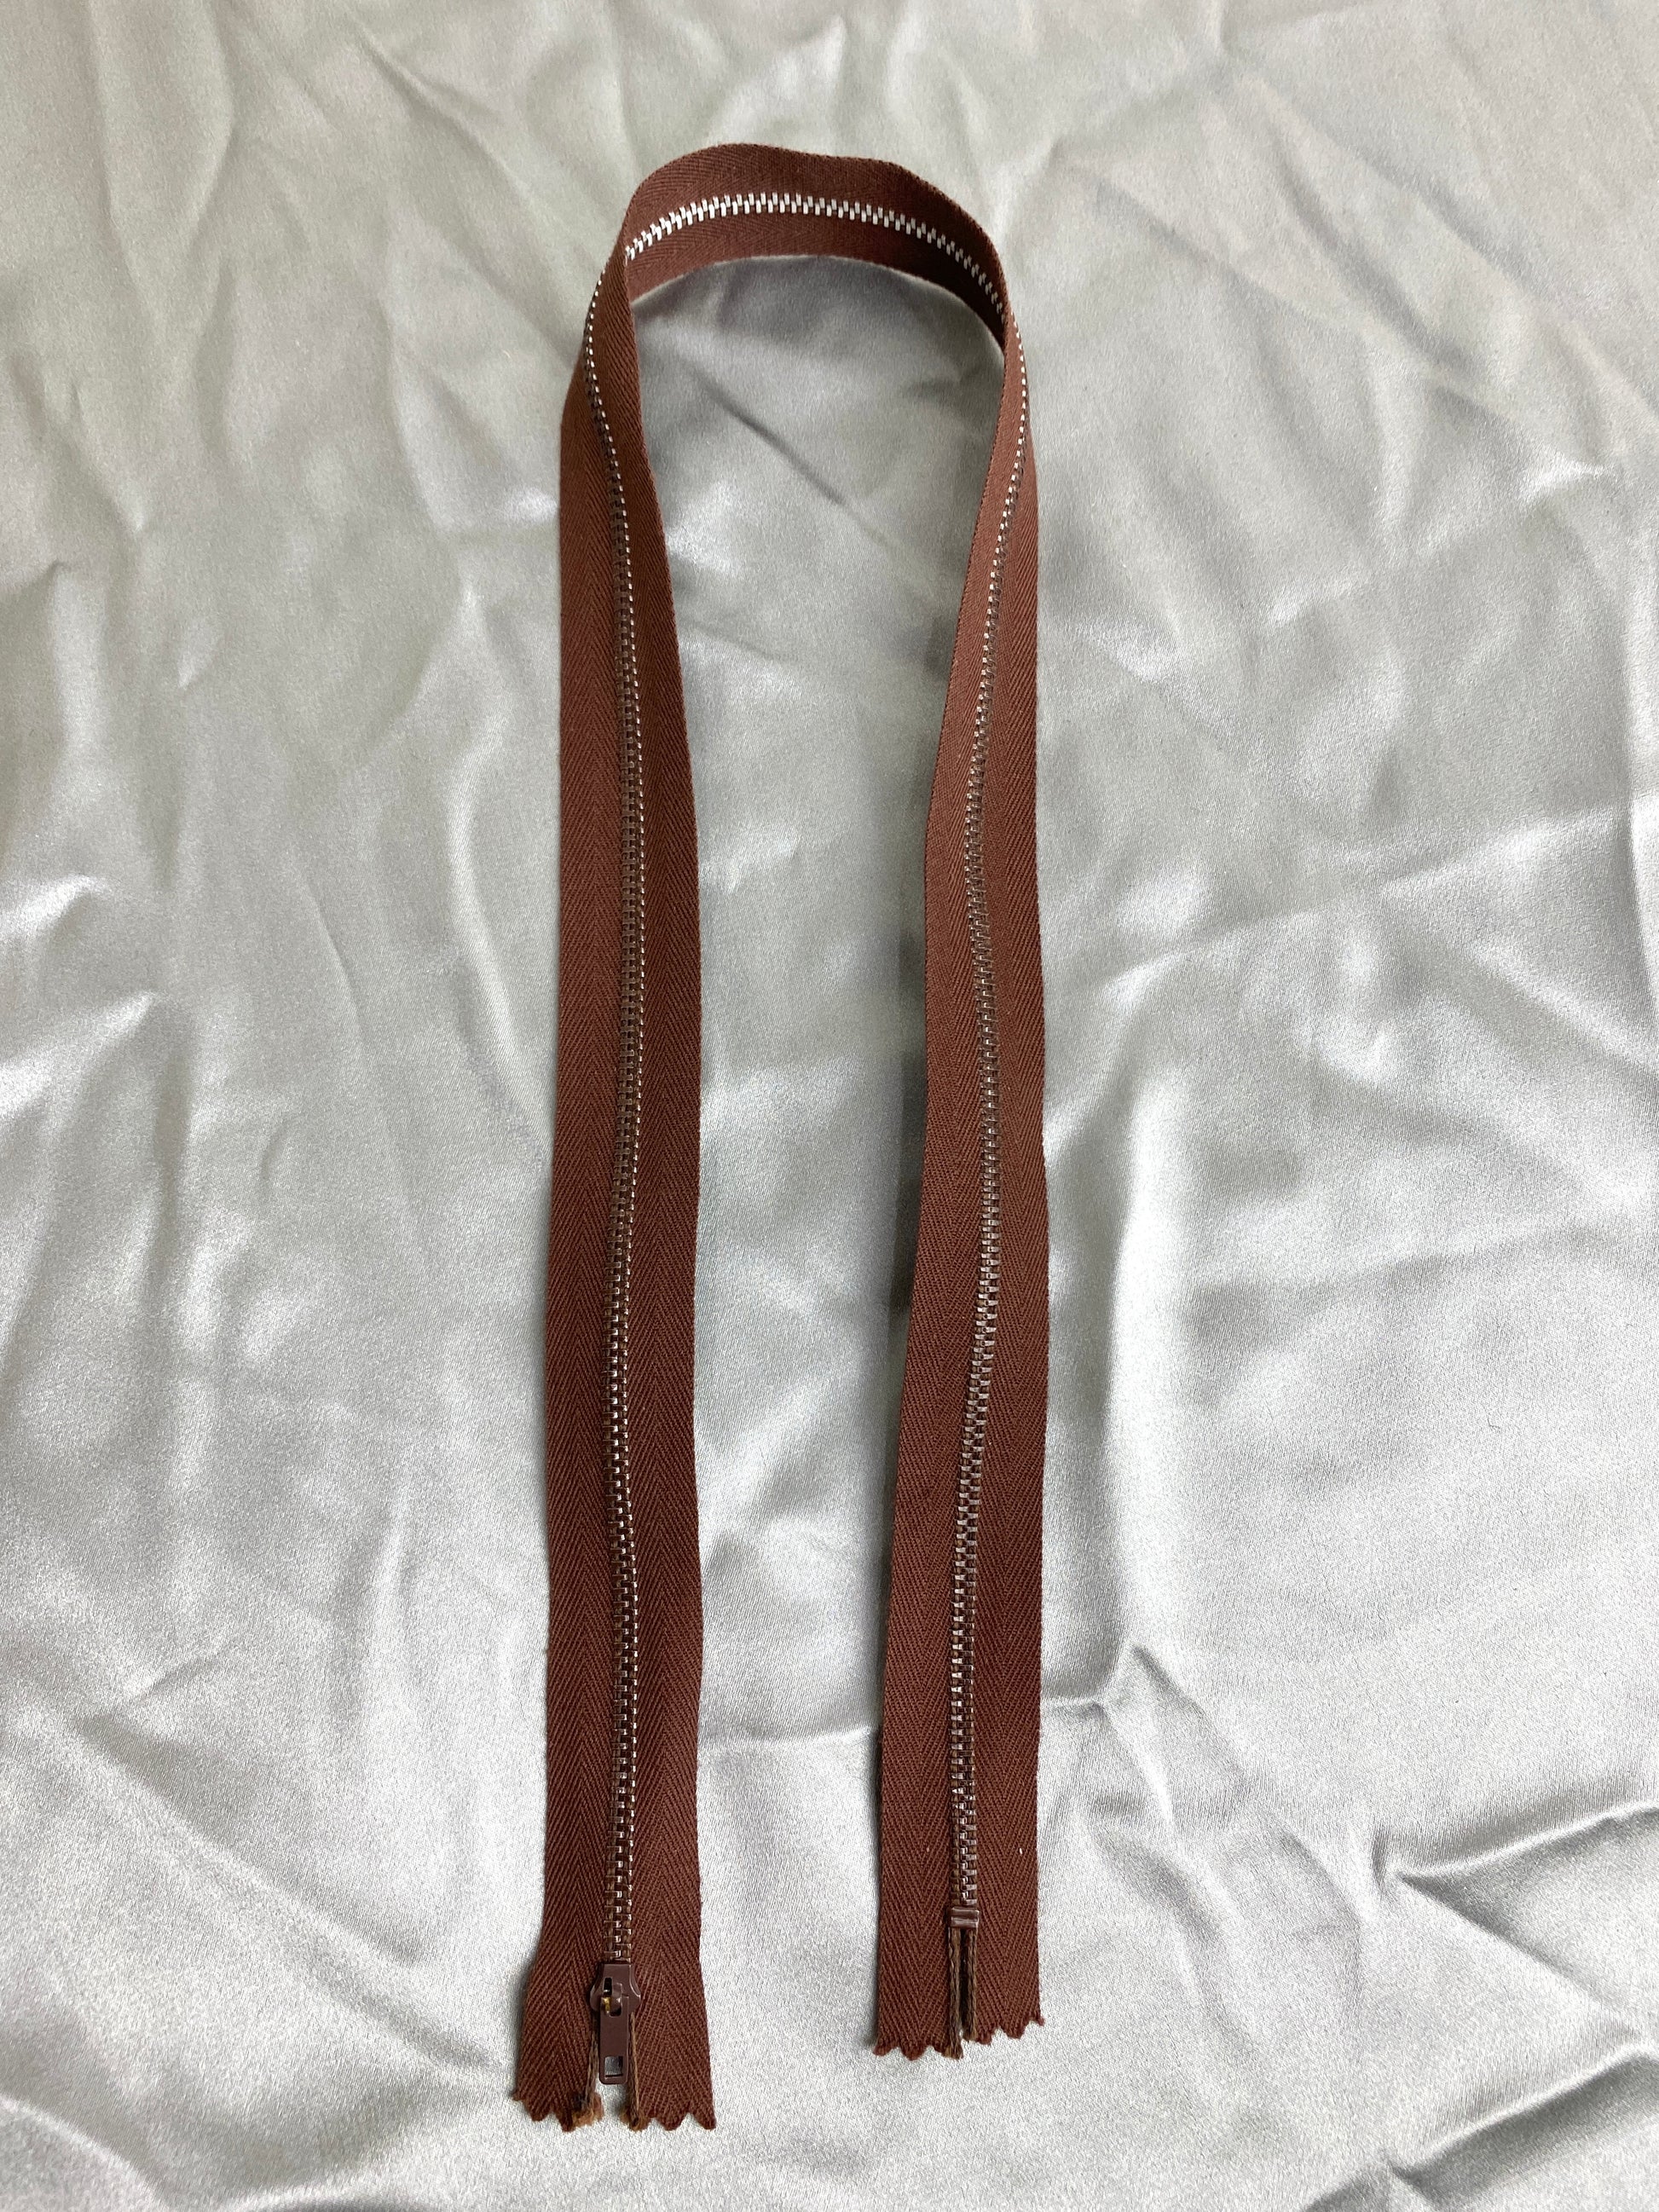 A single dark brown vintage metal zipper. Ian Drummond Vintage. 